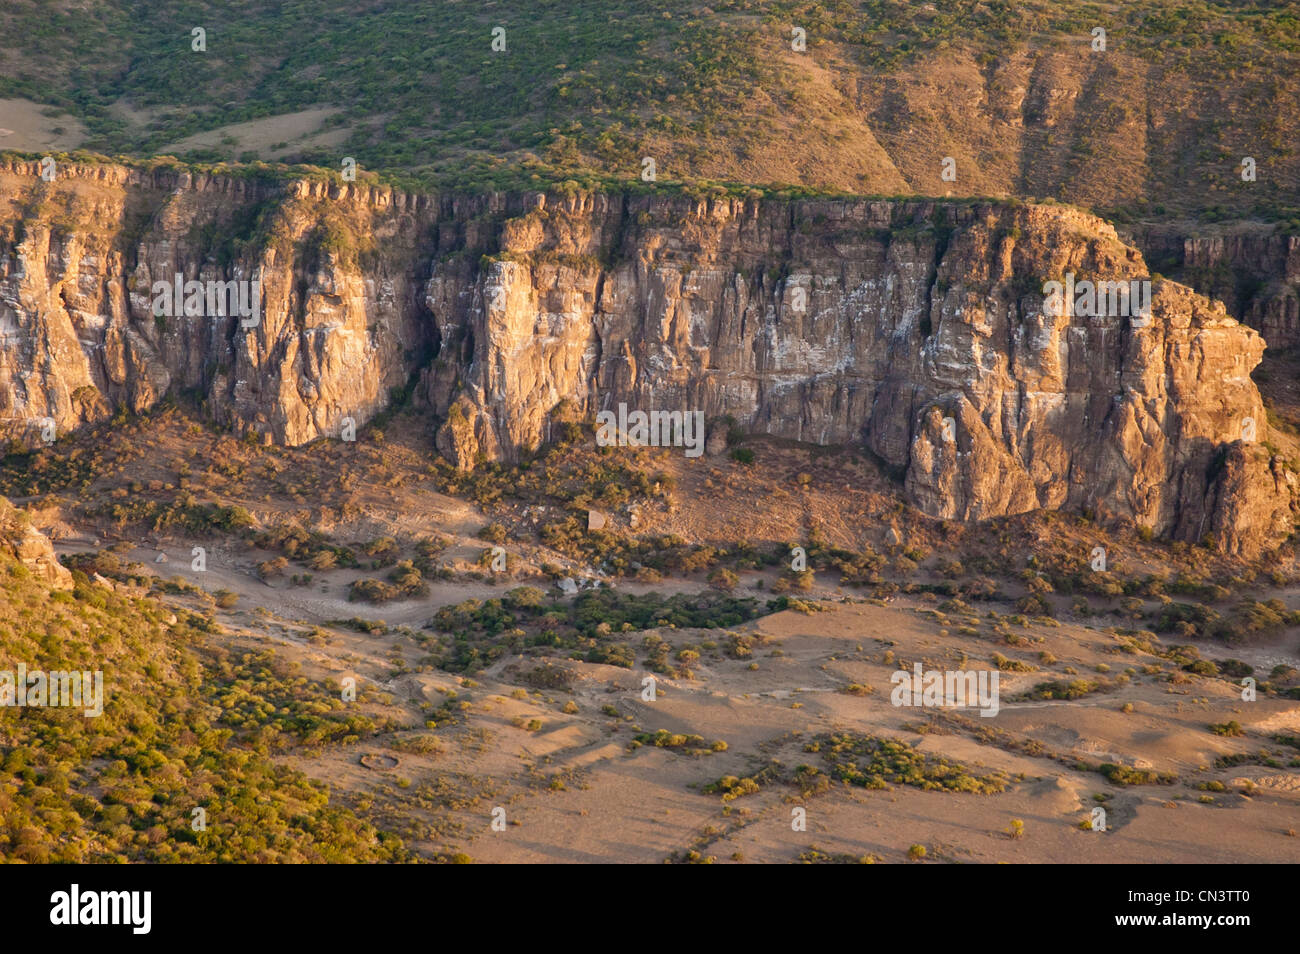 Sites de nidification Ruppell's ruppellii (Gyps) à Ol Karien gorge, vue aérienne, vue aérienne, Tanzanie Banque D'Images